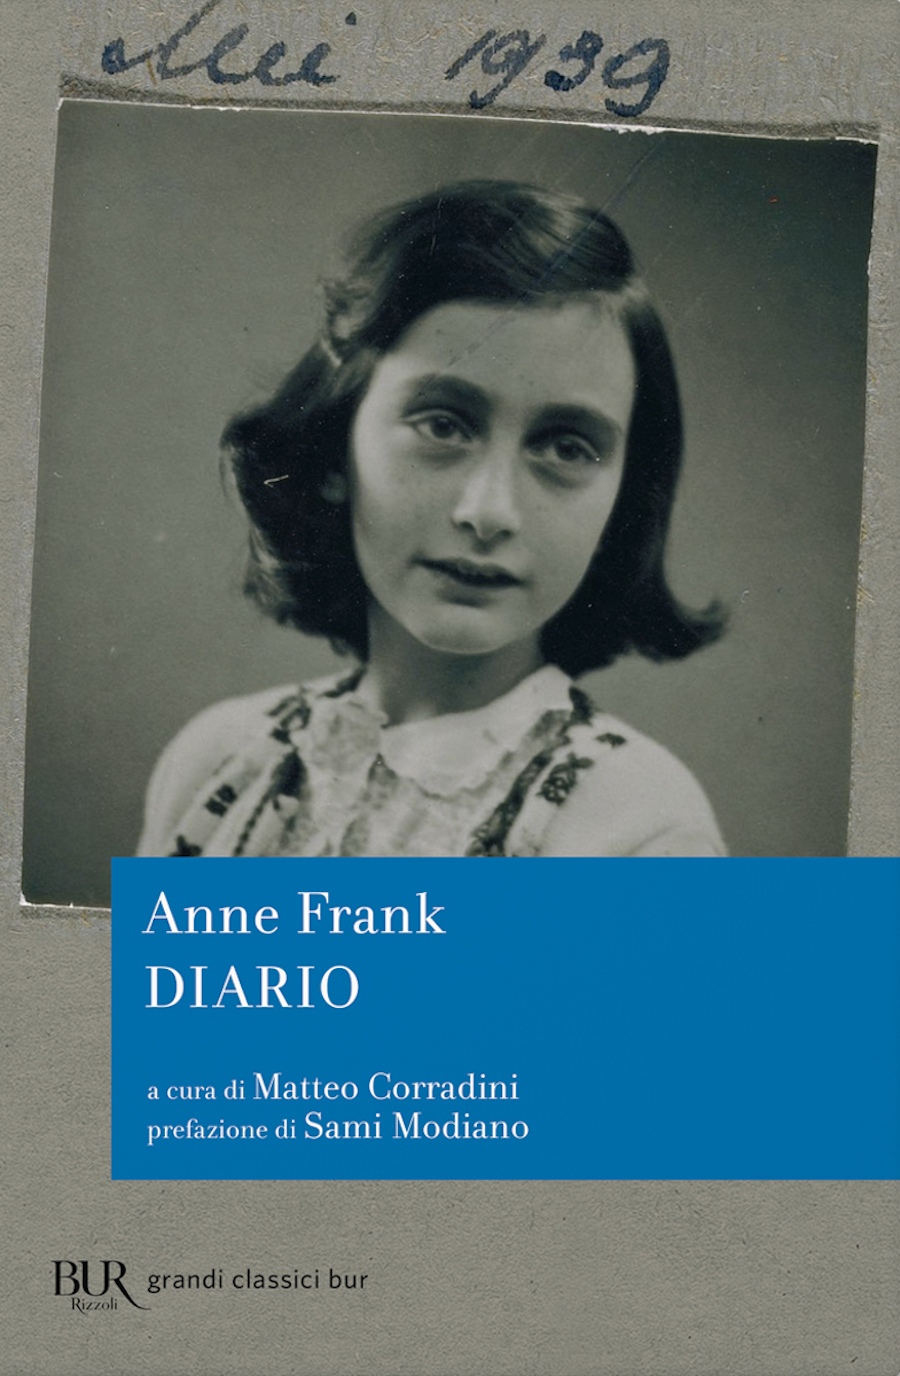 Anne Frank, Diario